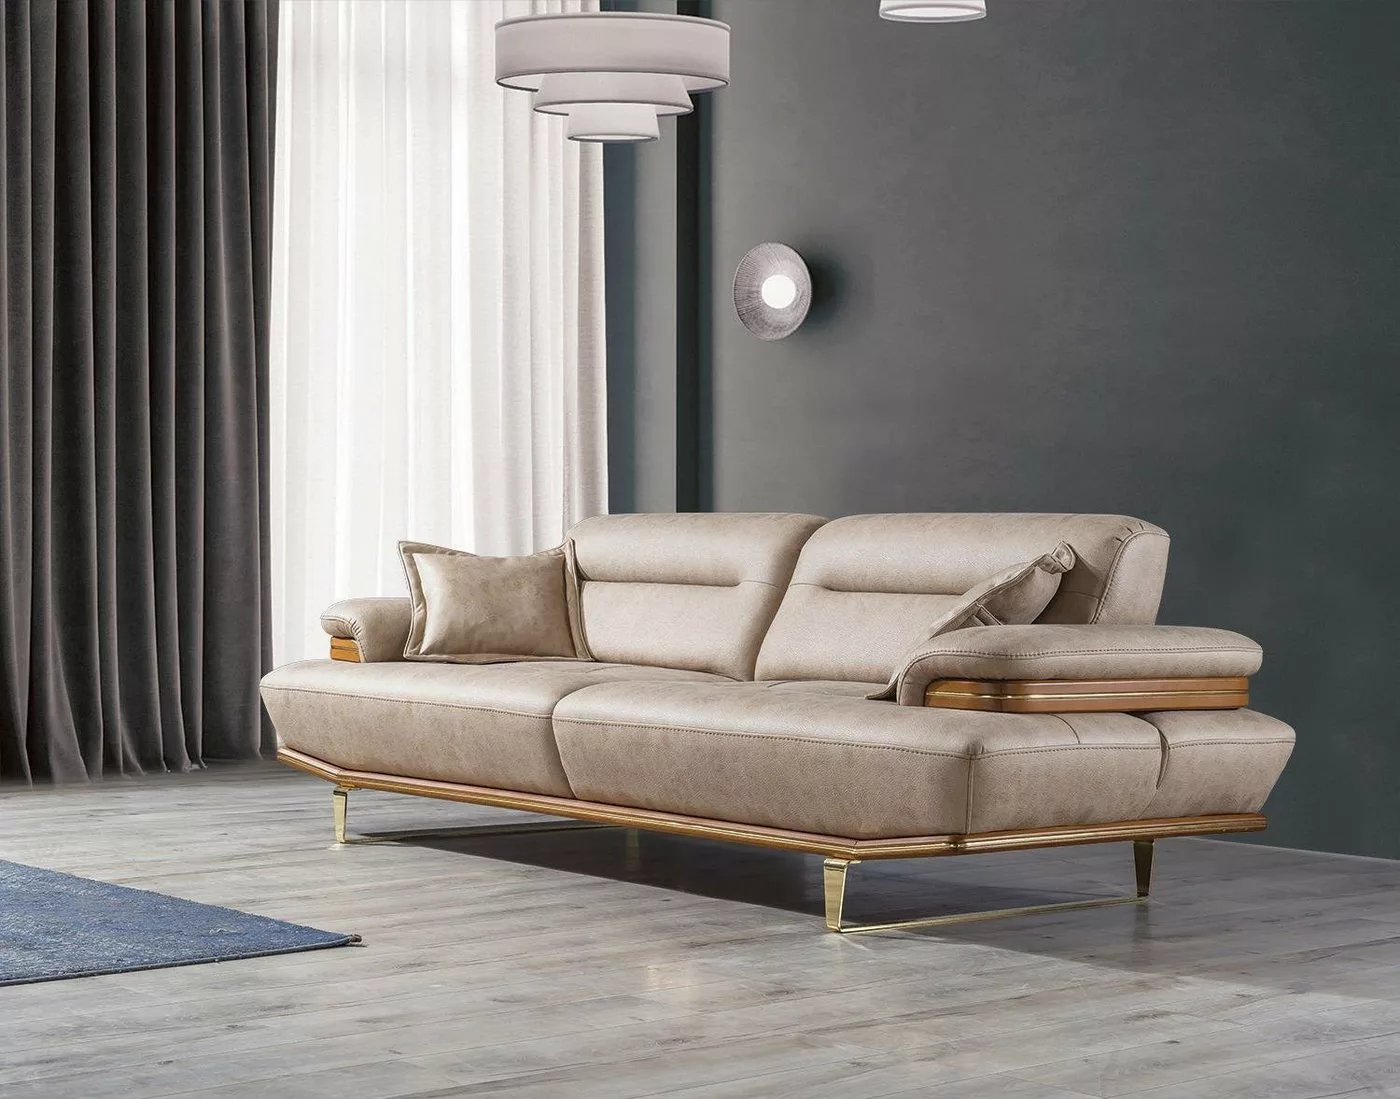 JVmoebel Sofa Dreisitzer Couch Polster Design Sofa Moderne Beige Luxus Möbe günstig online kaufen